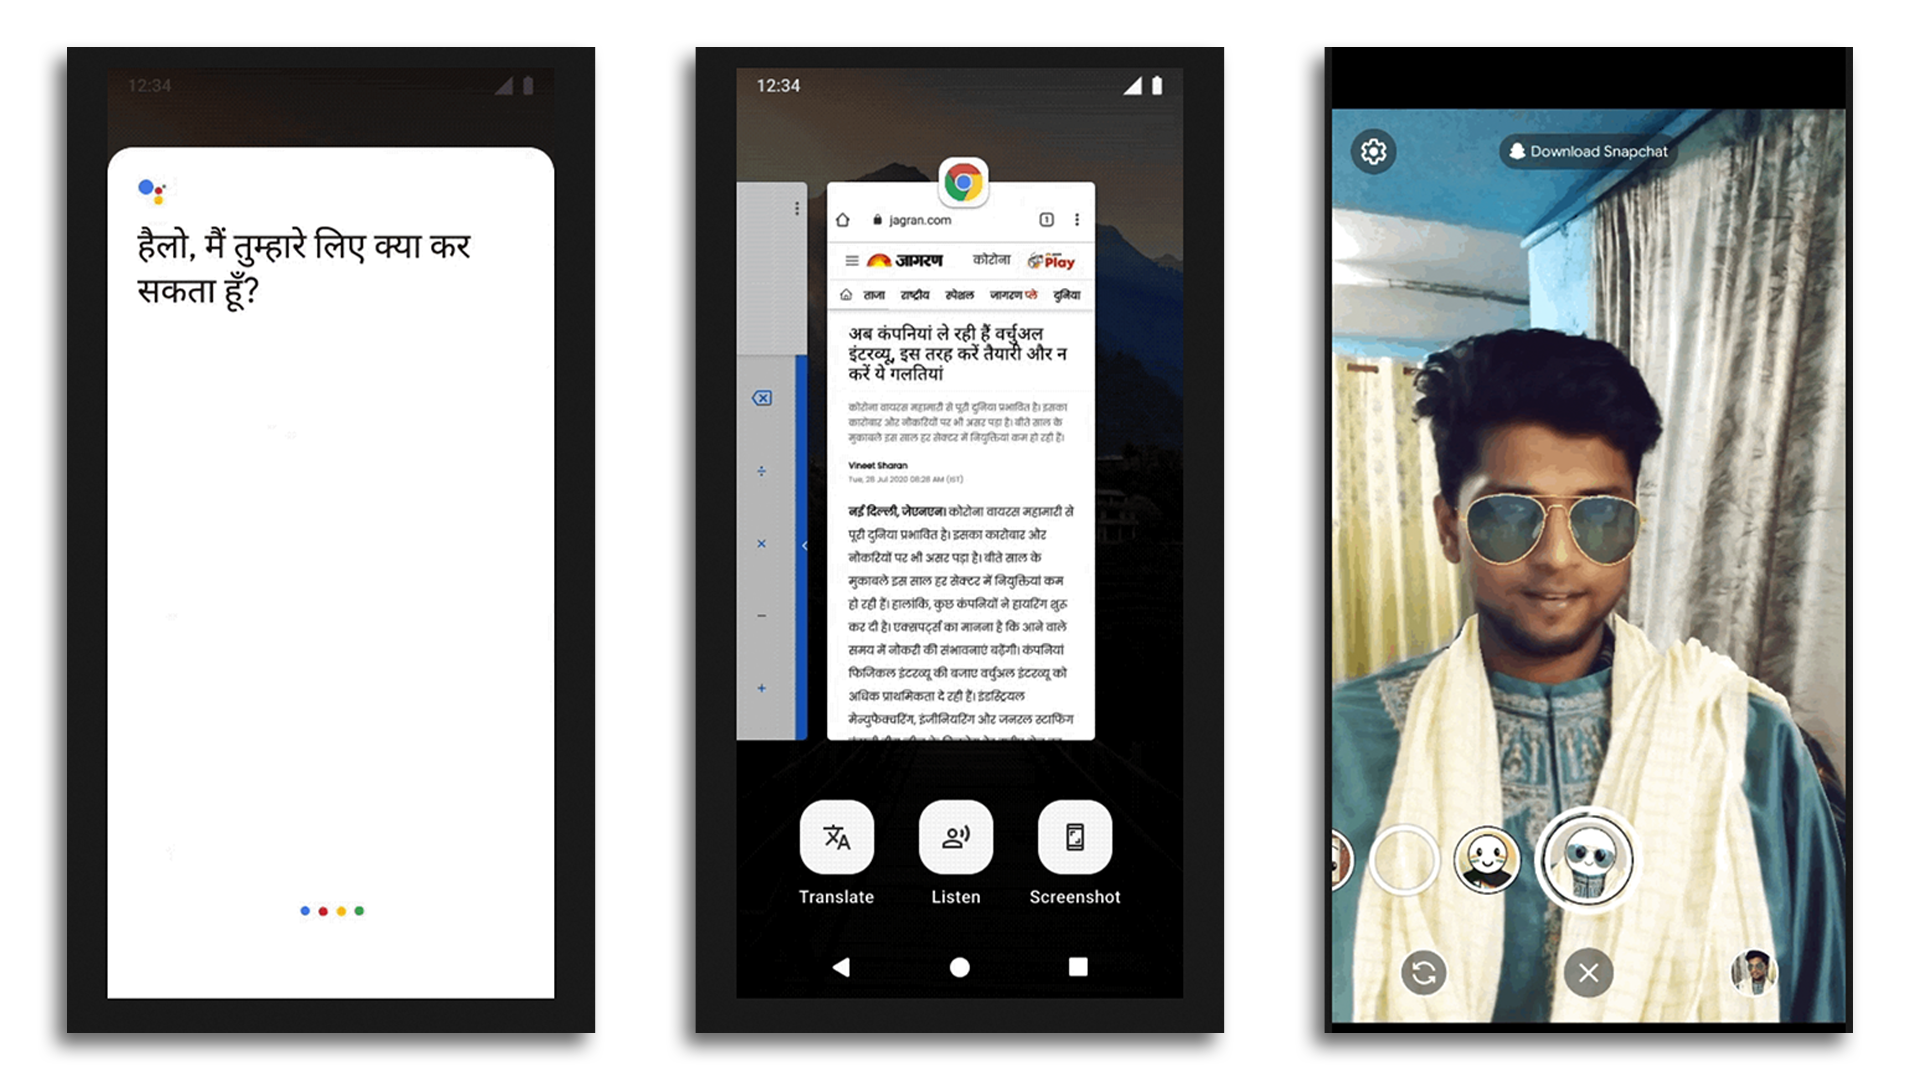 ตัวอย่างของข้อความเป็นคำพูดของ JioPhone Next, Google Assistant และฟีเจอร์ Snapchat AR